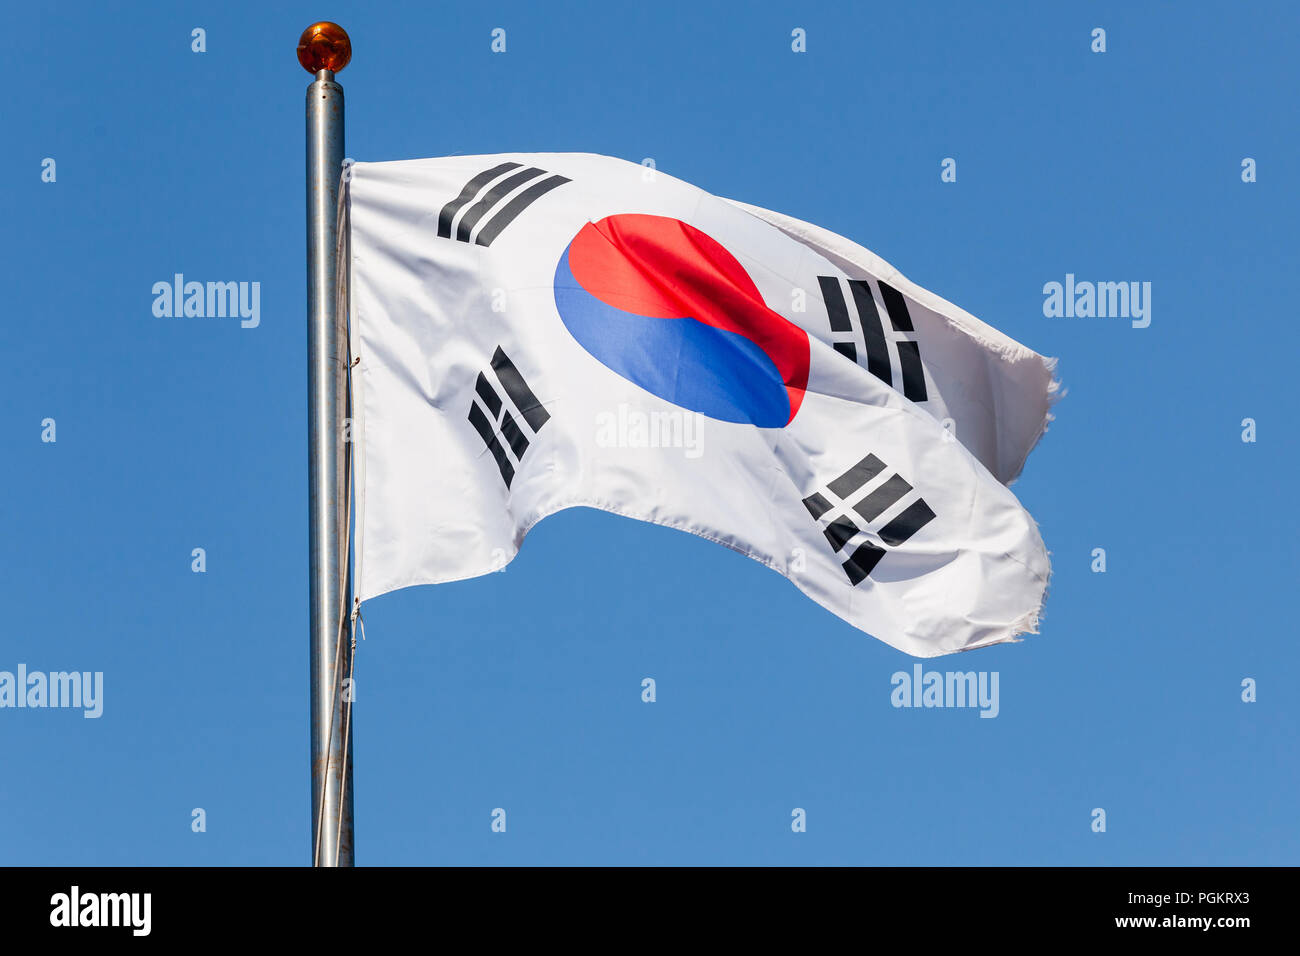 South Korea flag Taegukgi waving on a flagpole Stock Photo